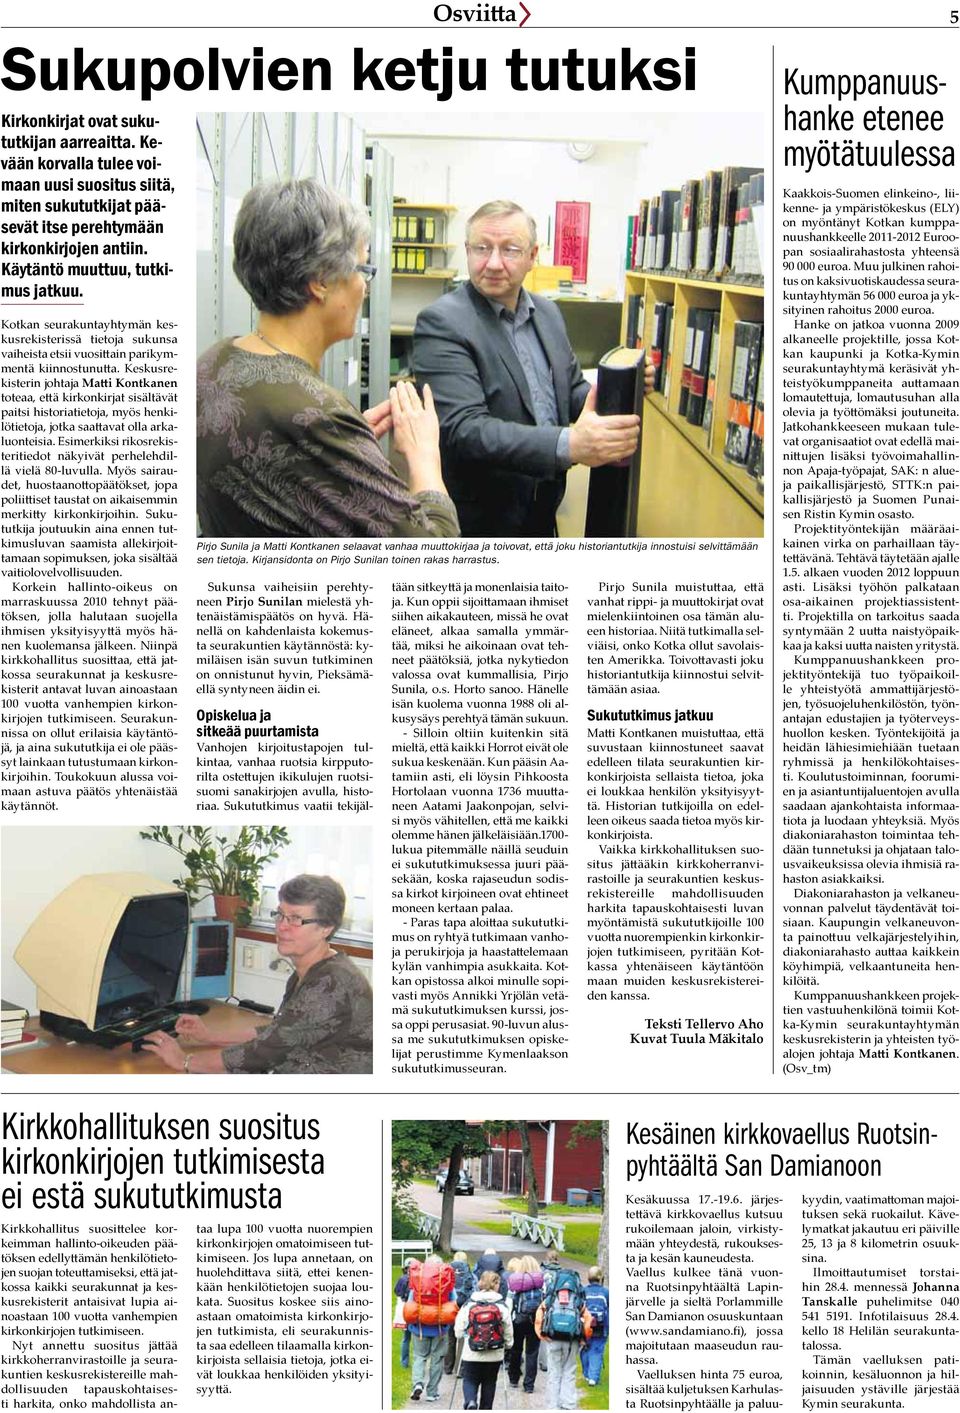 Keskusrekisterin johtaja Matti Kontkanen toteaa, että kirkonkirjat sisältävät paitsi historiatietoja, myös henkilötietoja, jotka saattavat olla arkaluonteisia.